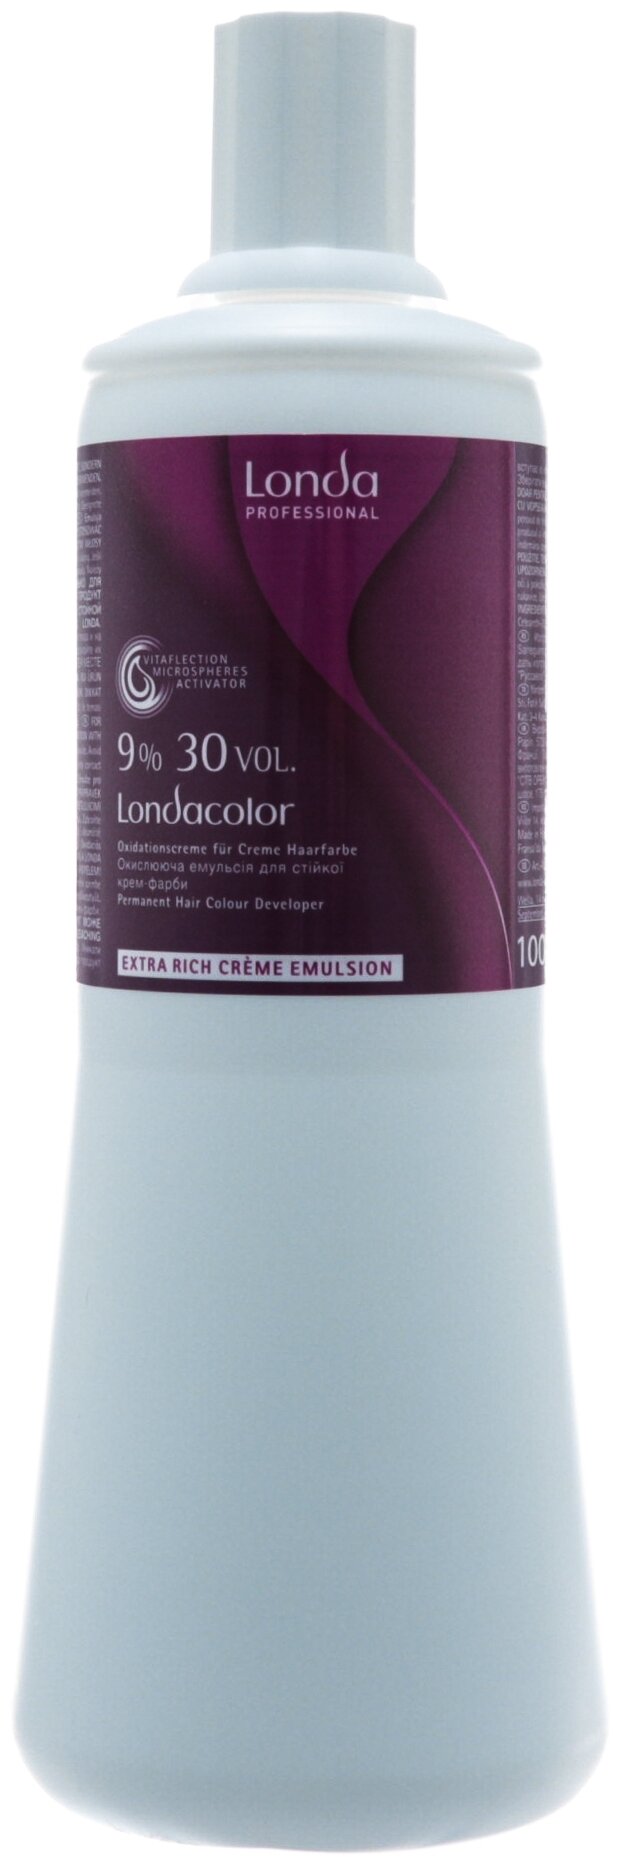 Londa Professional Londacolor Окислительная эмульсия для стойкой крем-краски Extra Rich Creme Emulsion, 9%, 1000 мл